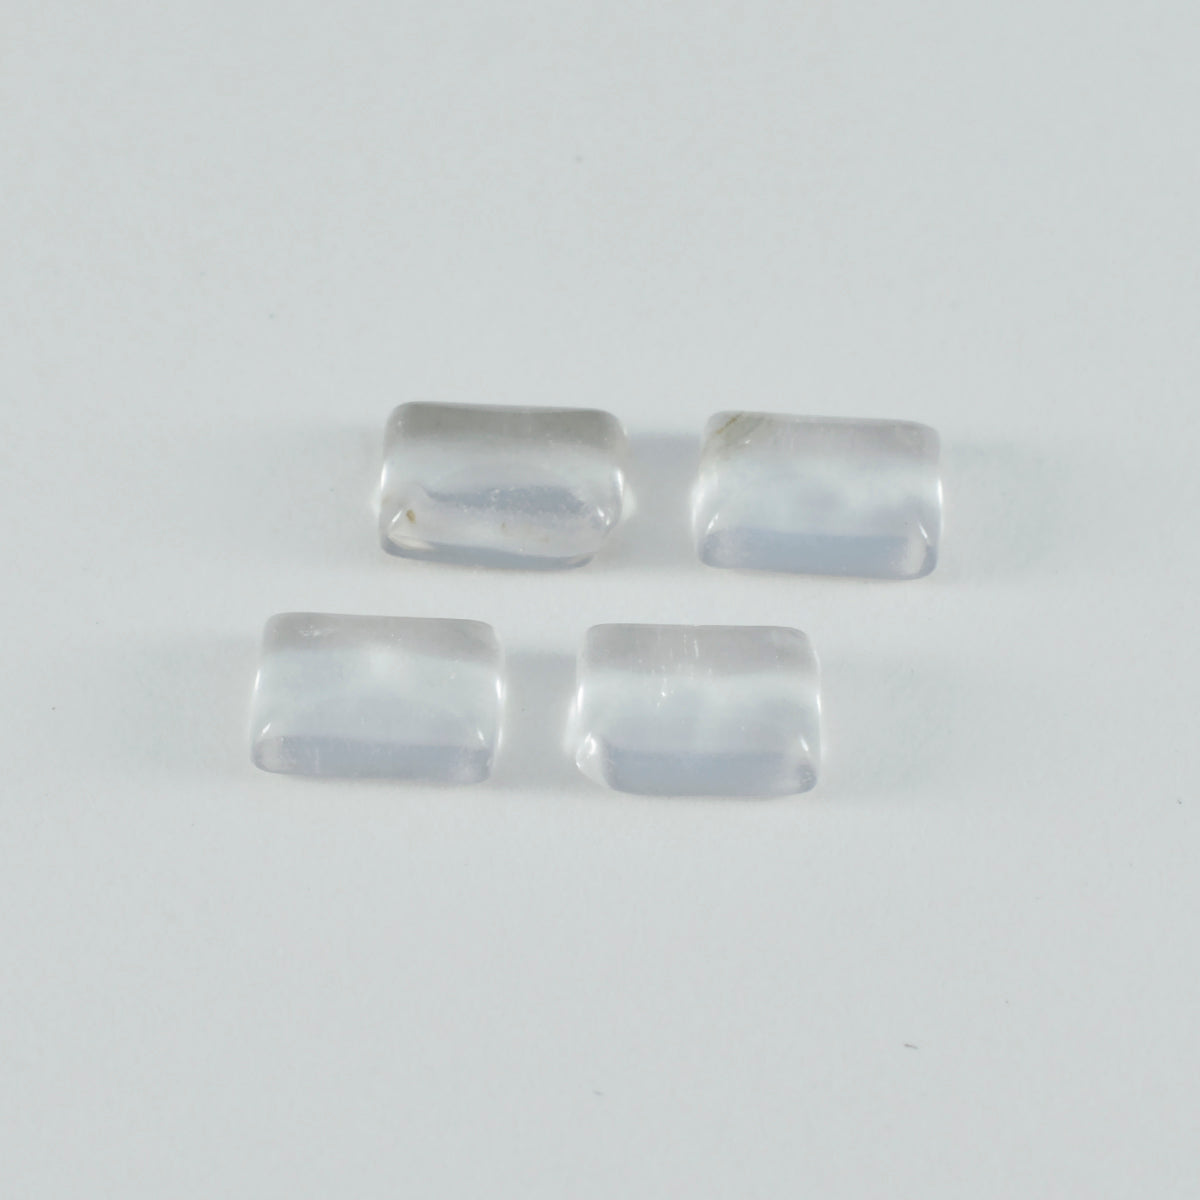 riyogems 1 шт. кабошон из белого кристалла кварца 9x11 мм восьмиугольной формы, отличное качество, свободные драгоценные камни